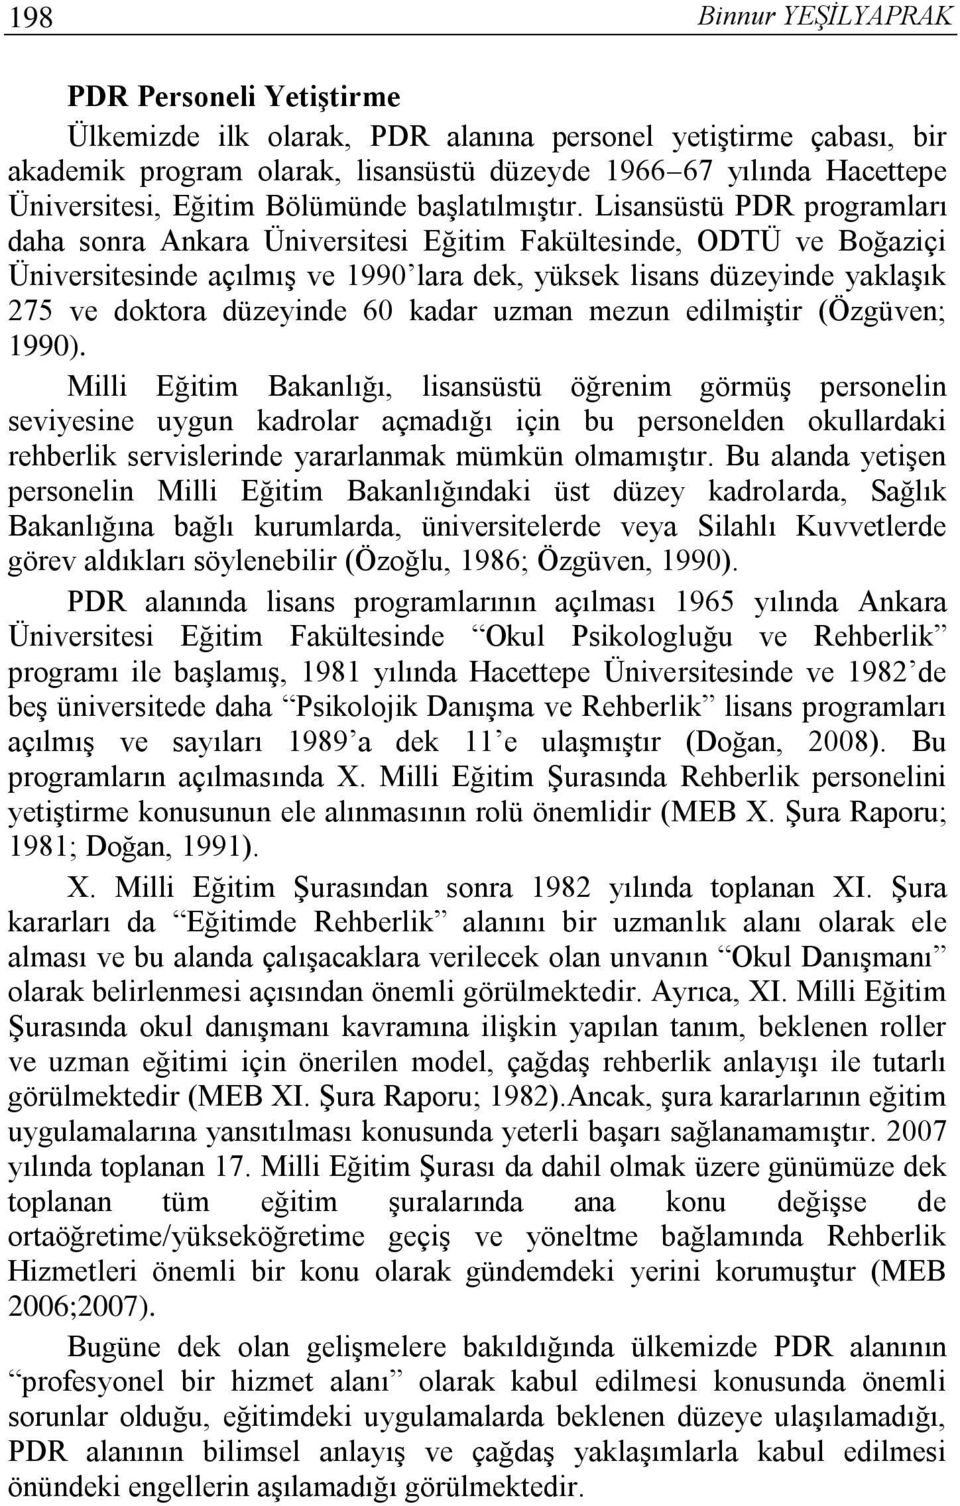 Lisansüstü PDR programları daha sonra Ankara Üniversitesi Eğitim Fakültesinde, ODTÜ ve Boğaziçi Üniversitesinde açılmış ve 1990 lara dek, yüksek lisans düzeyinde yaklaşık 275 ve doktora düzeyinde 60